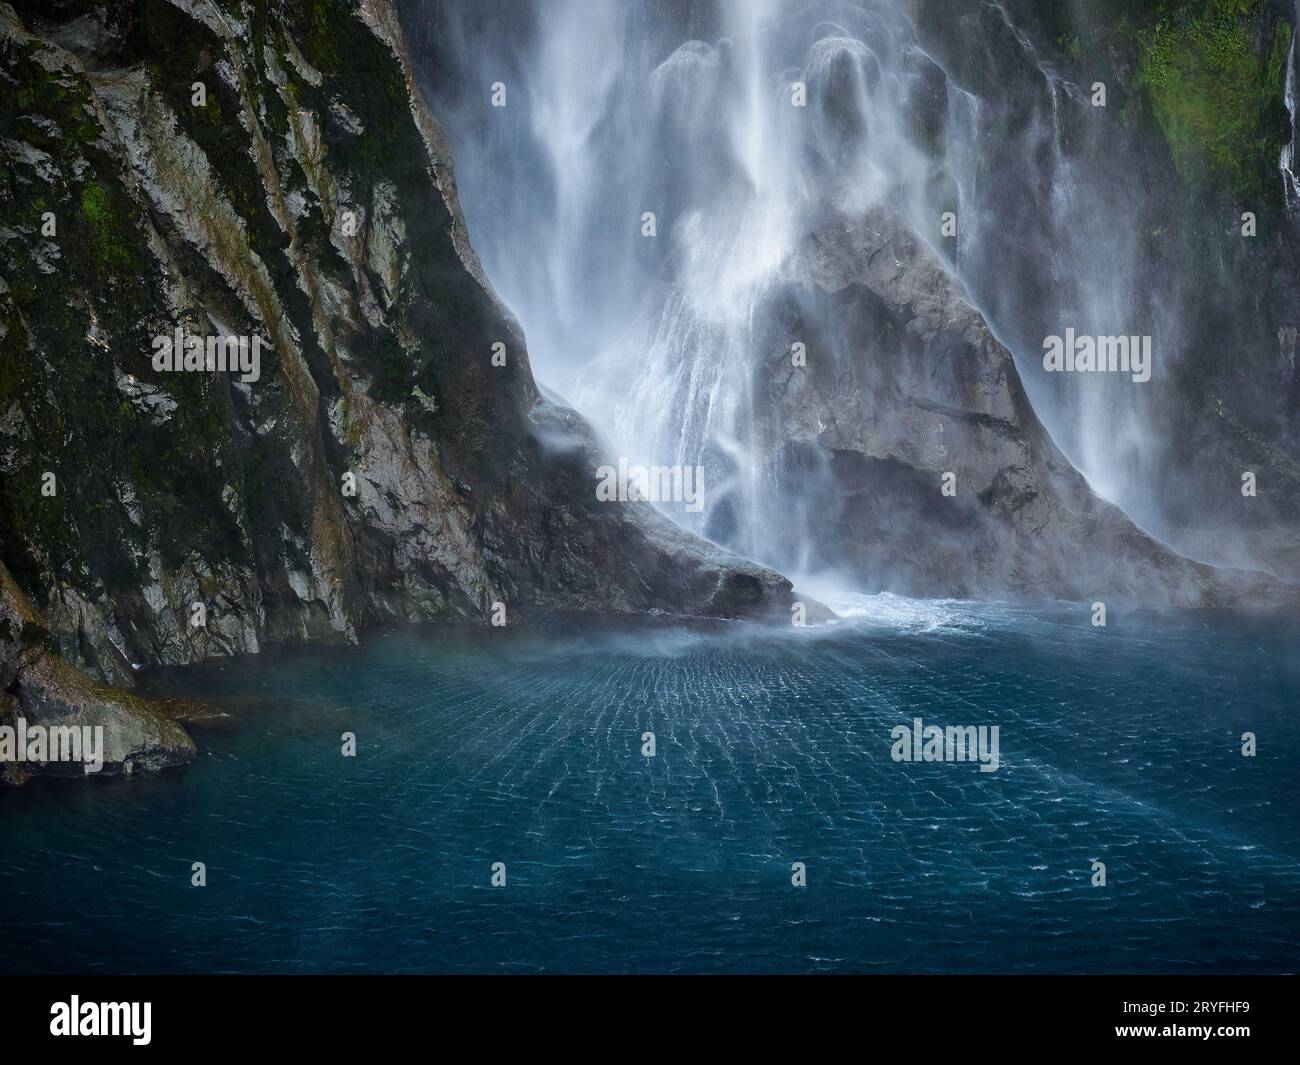 Movimento dell'acqua e piscina di Lady Barron Falls, nuova Zelanda. L'acqua azzurra è incantevole, il bianco dell'enorme goccia d'acqua e le pareti di roccia bagnata. Foto Stock